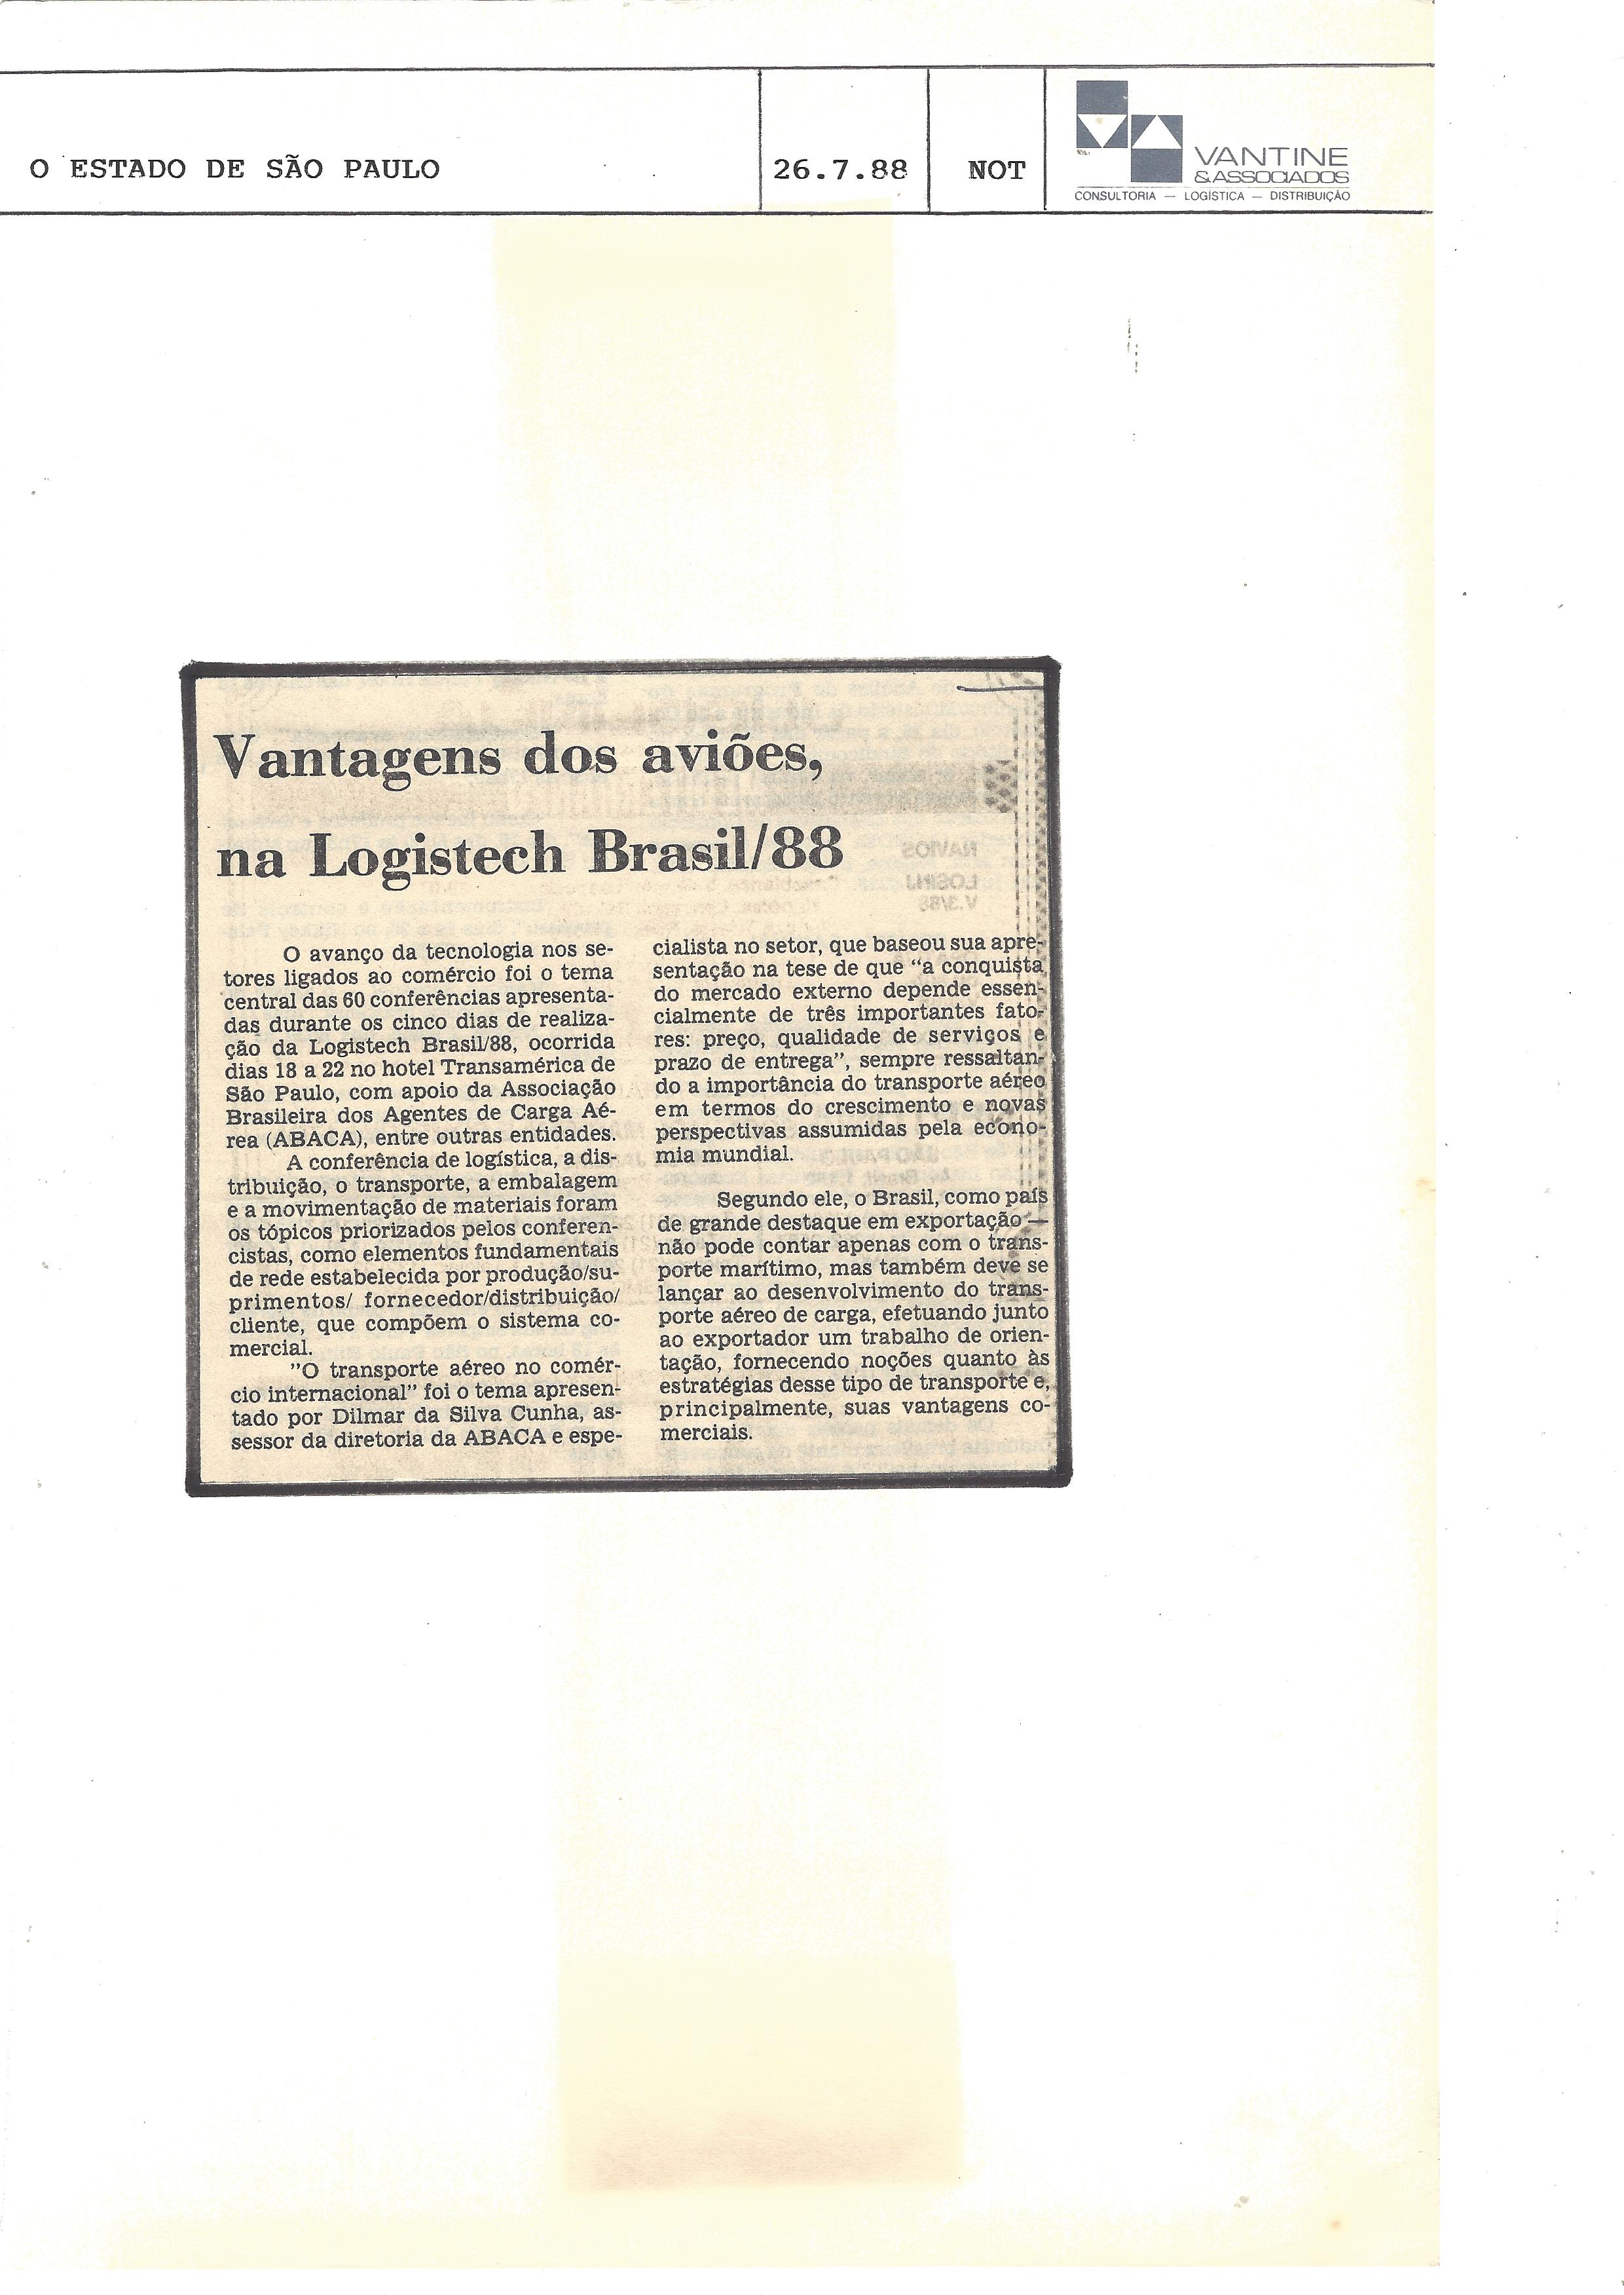 vantagens dos aviões, na logistech brasil’88 – o estado de são paulo